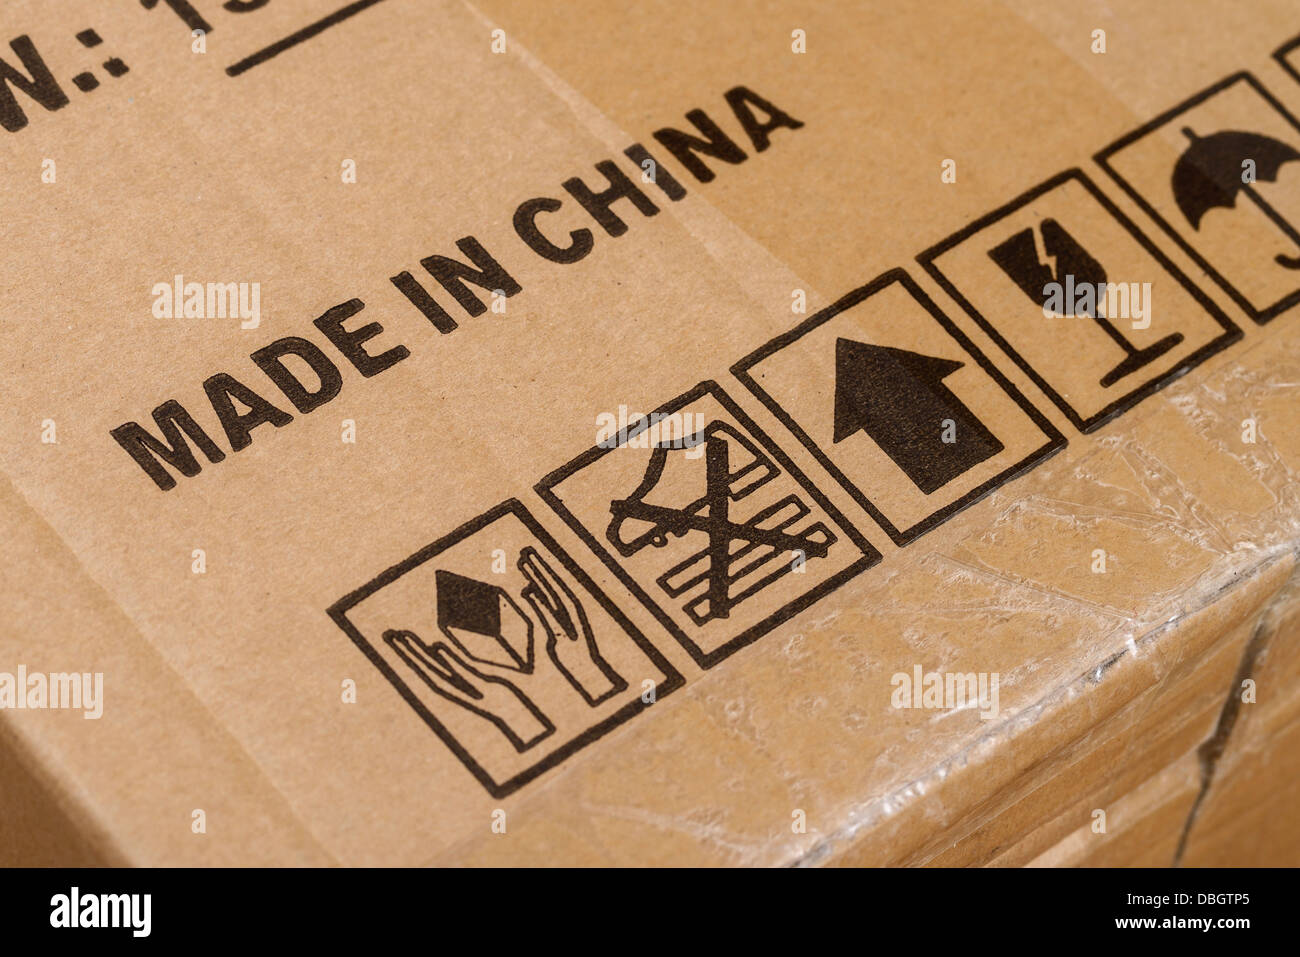 Fabbricato in Cina stampata su una scatola di cartone Foto Stock